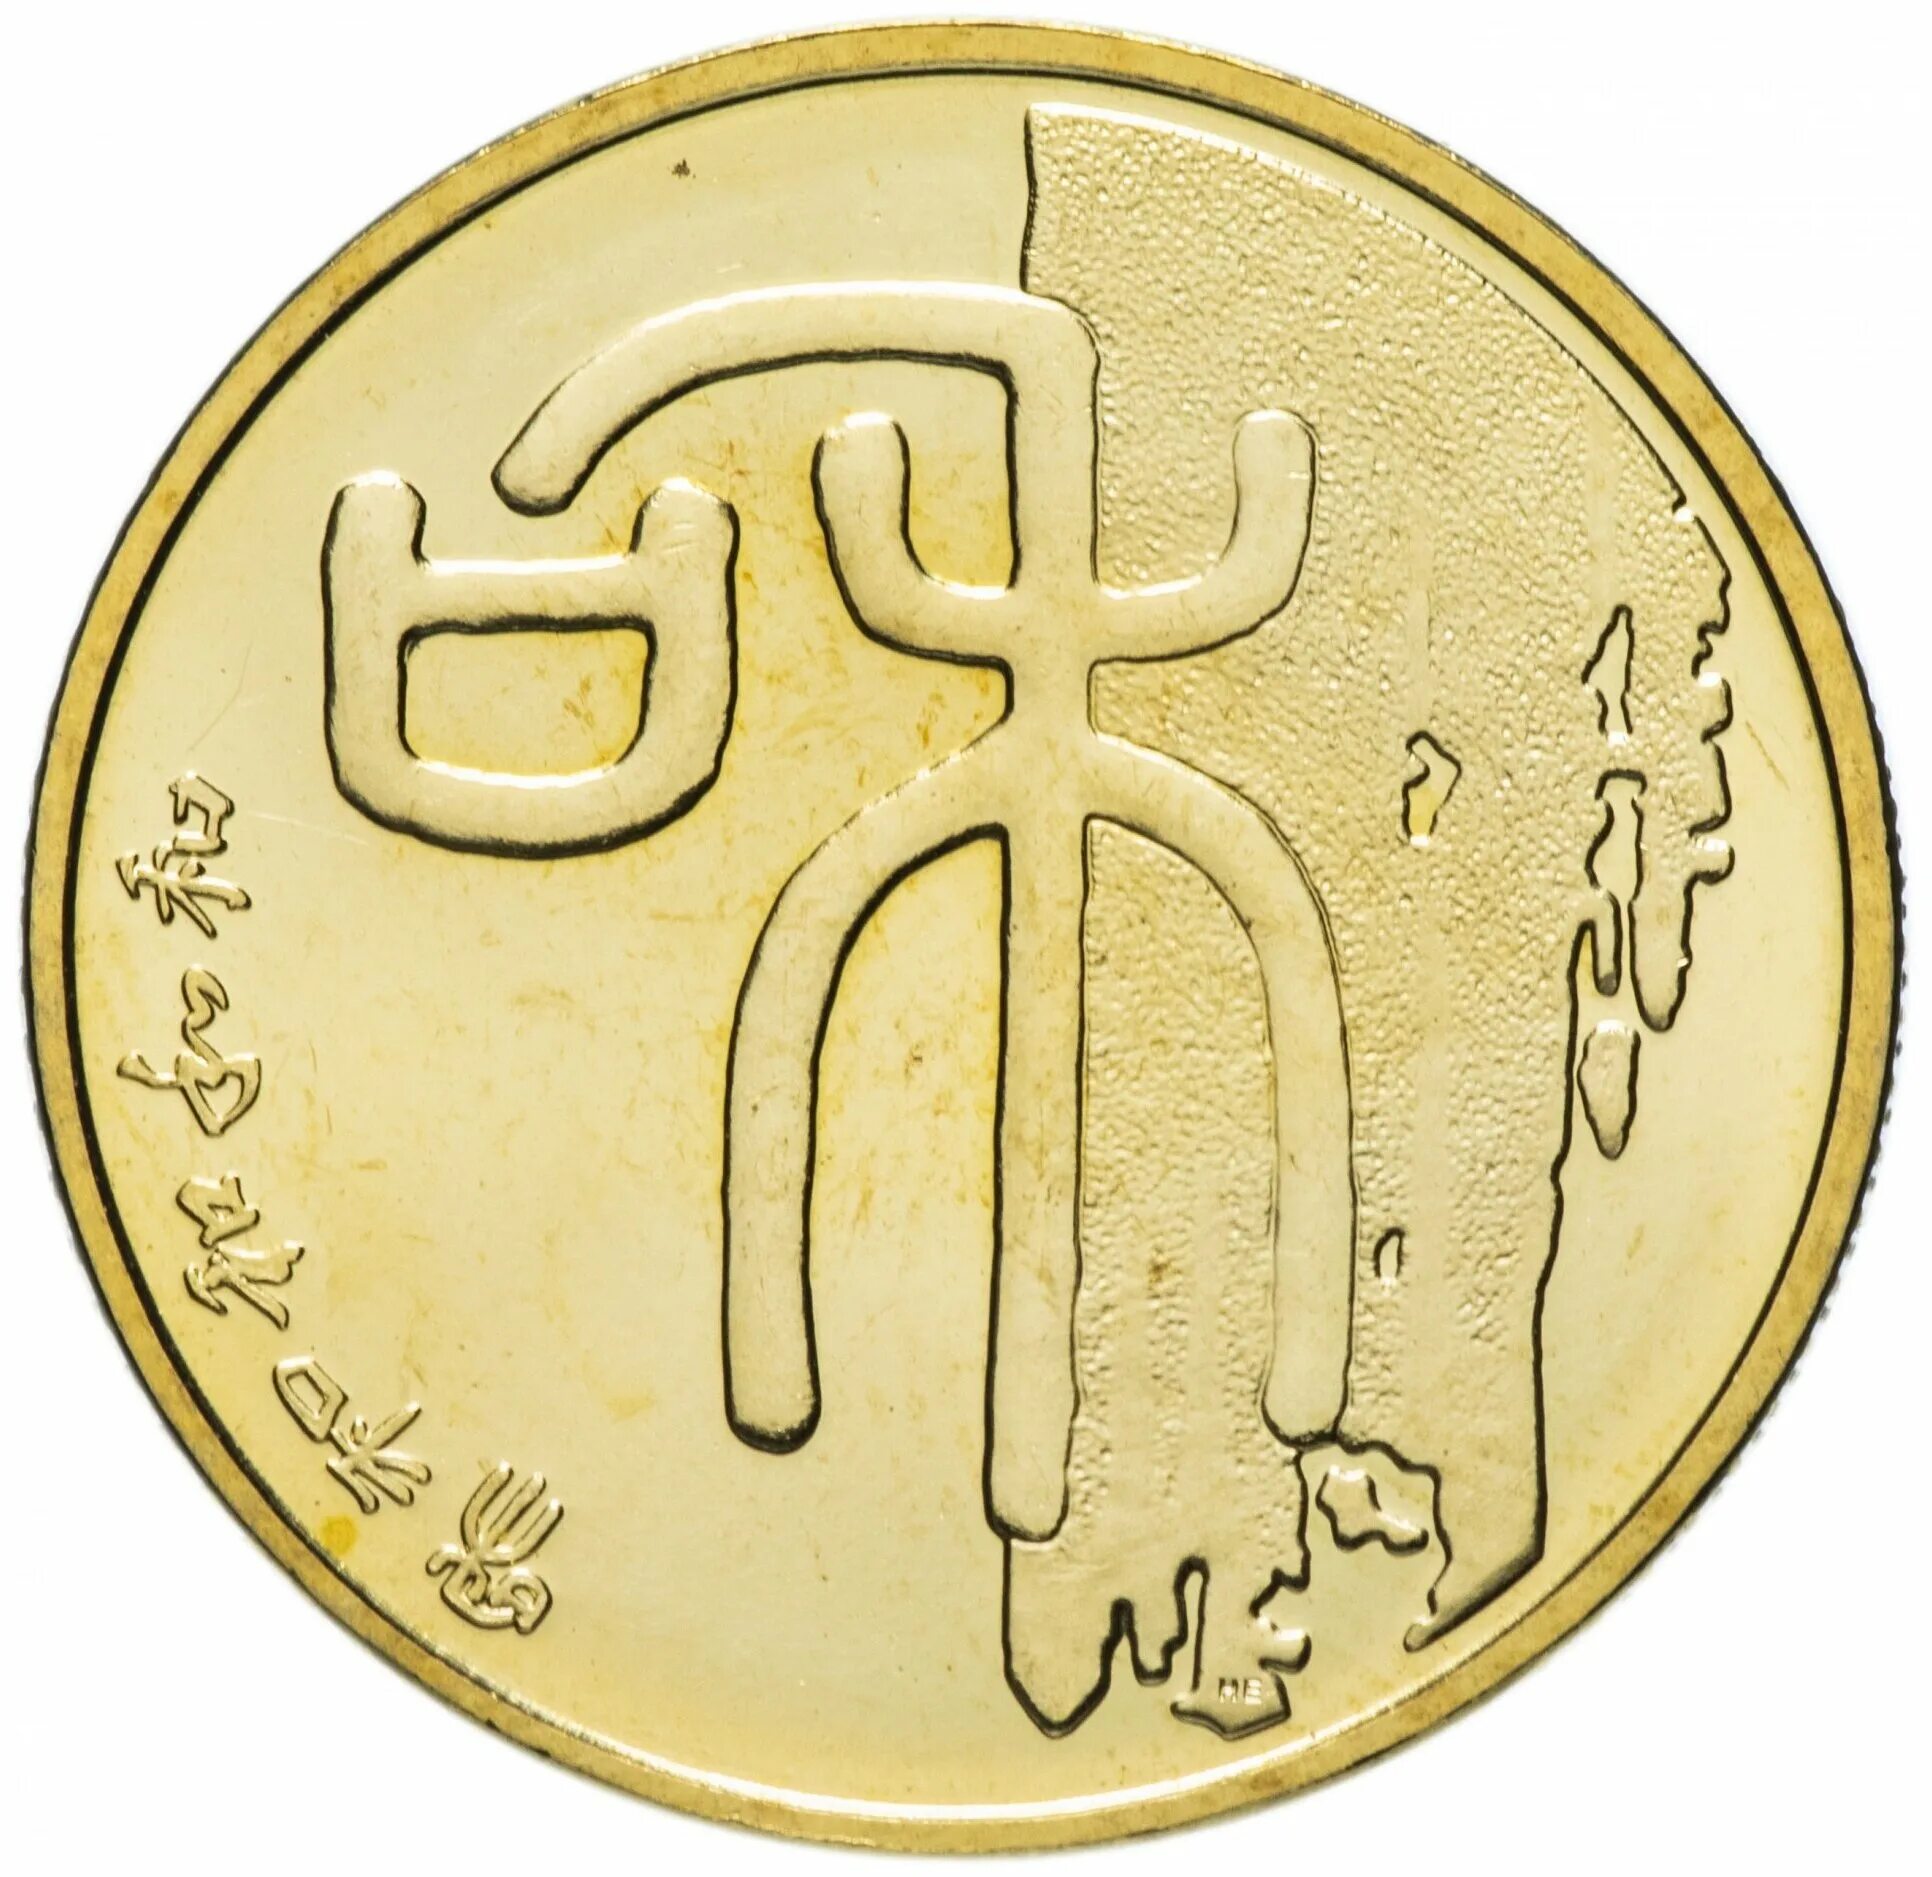 Китайский юань монеты. Китайский юань Монетка. Монеты Китая 1 юань. Монеты Китая 1 юань 2009 каллиграфия-Гармония. Монета китайская каллиграфия Гармония.